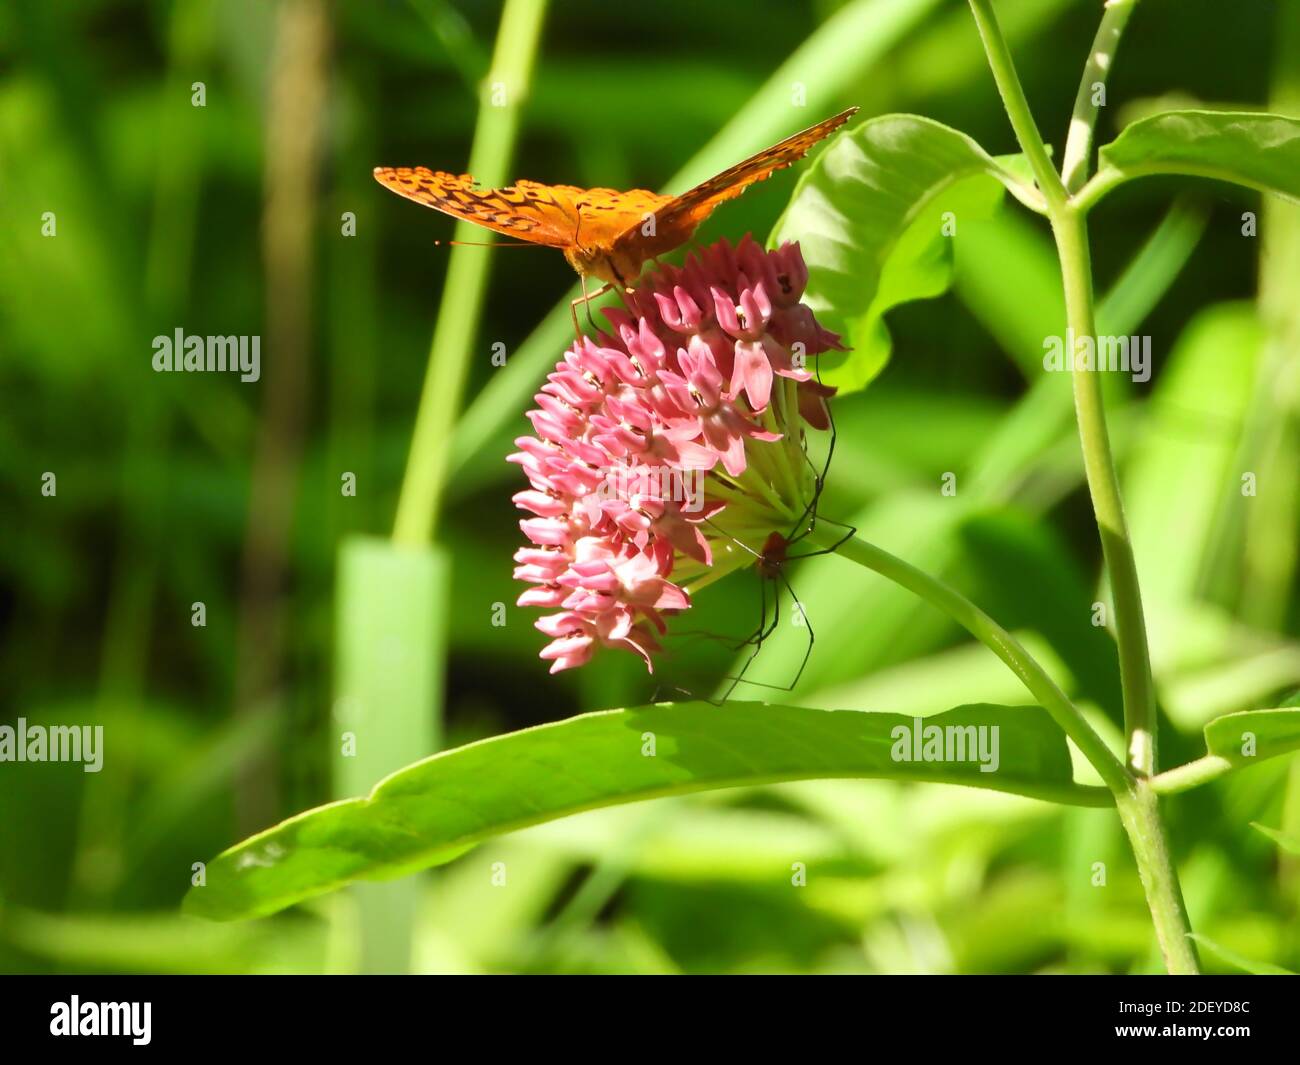 Papillon fritillaire lavé à l'argent (pephia d'Argynnis) Un papillon orange est placé sur une fleur rose avec un Araignée sur la partie inférieure de la fleur entourée b Banque D'Images